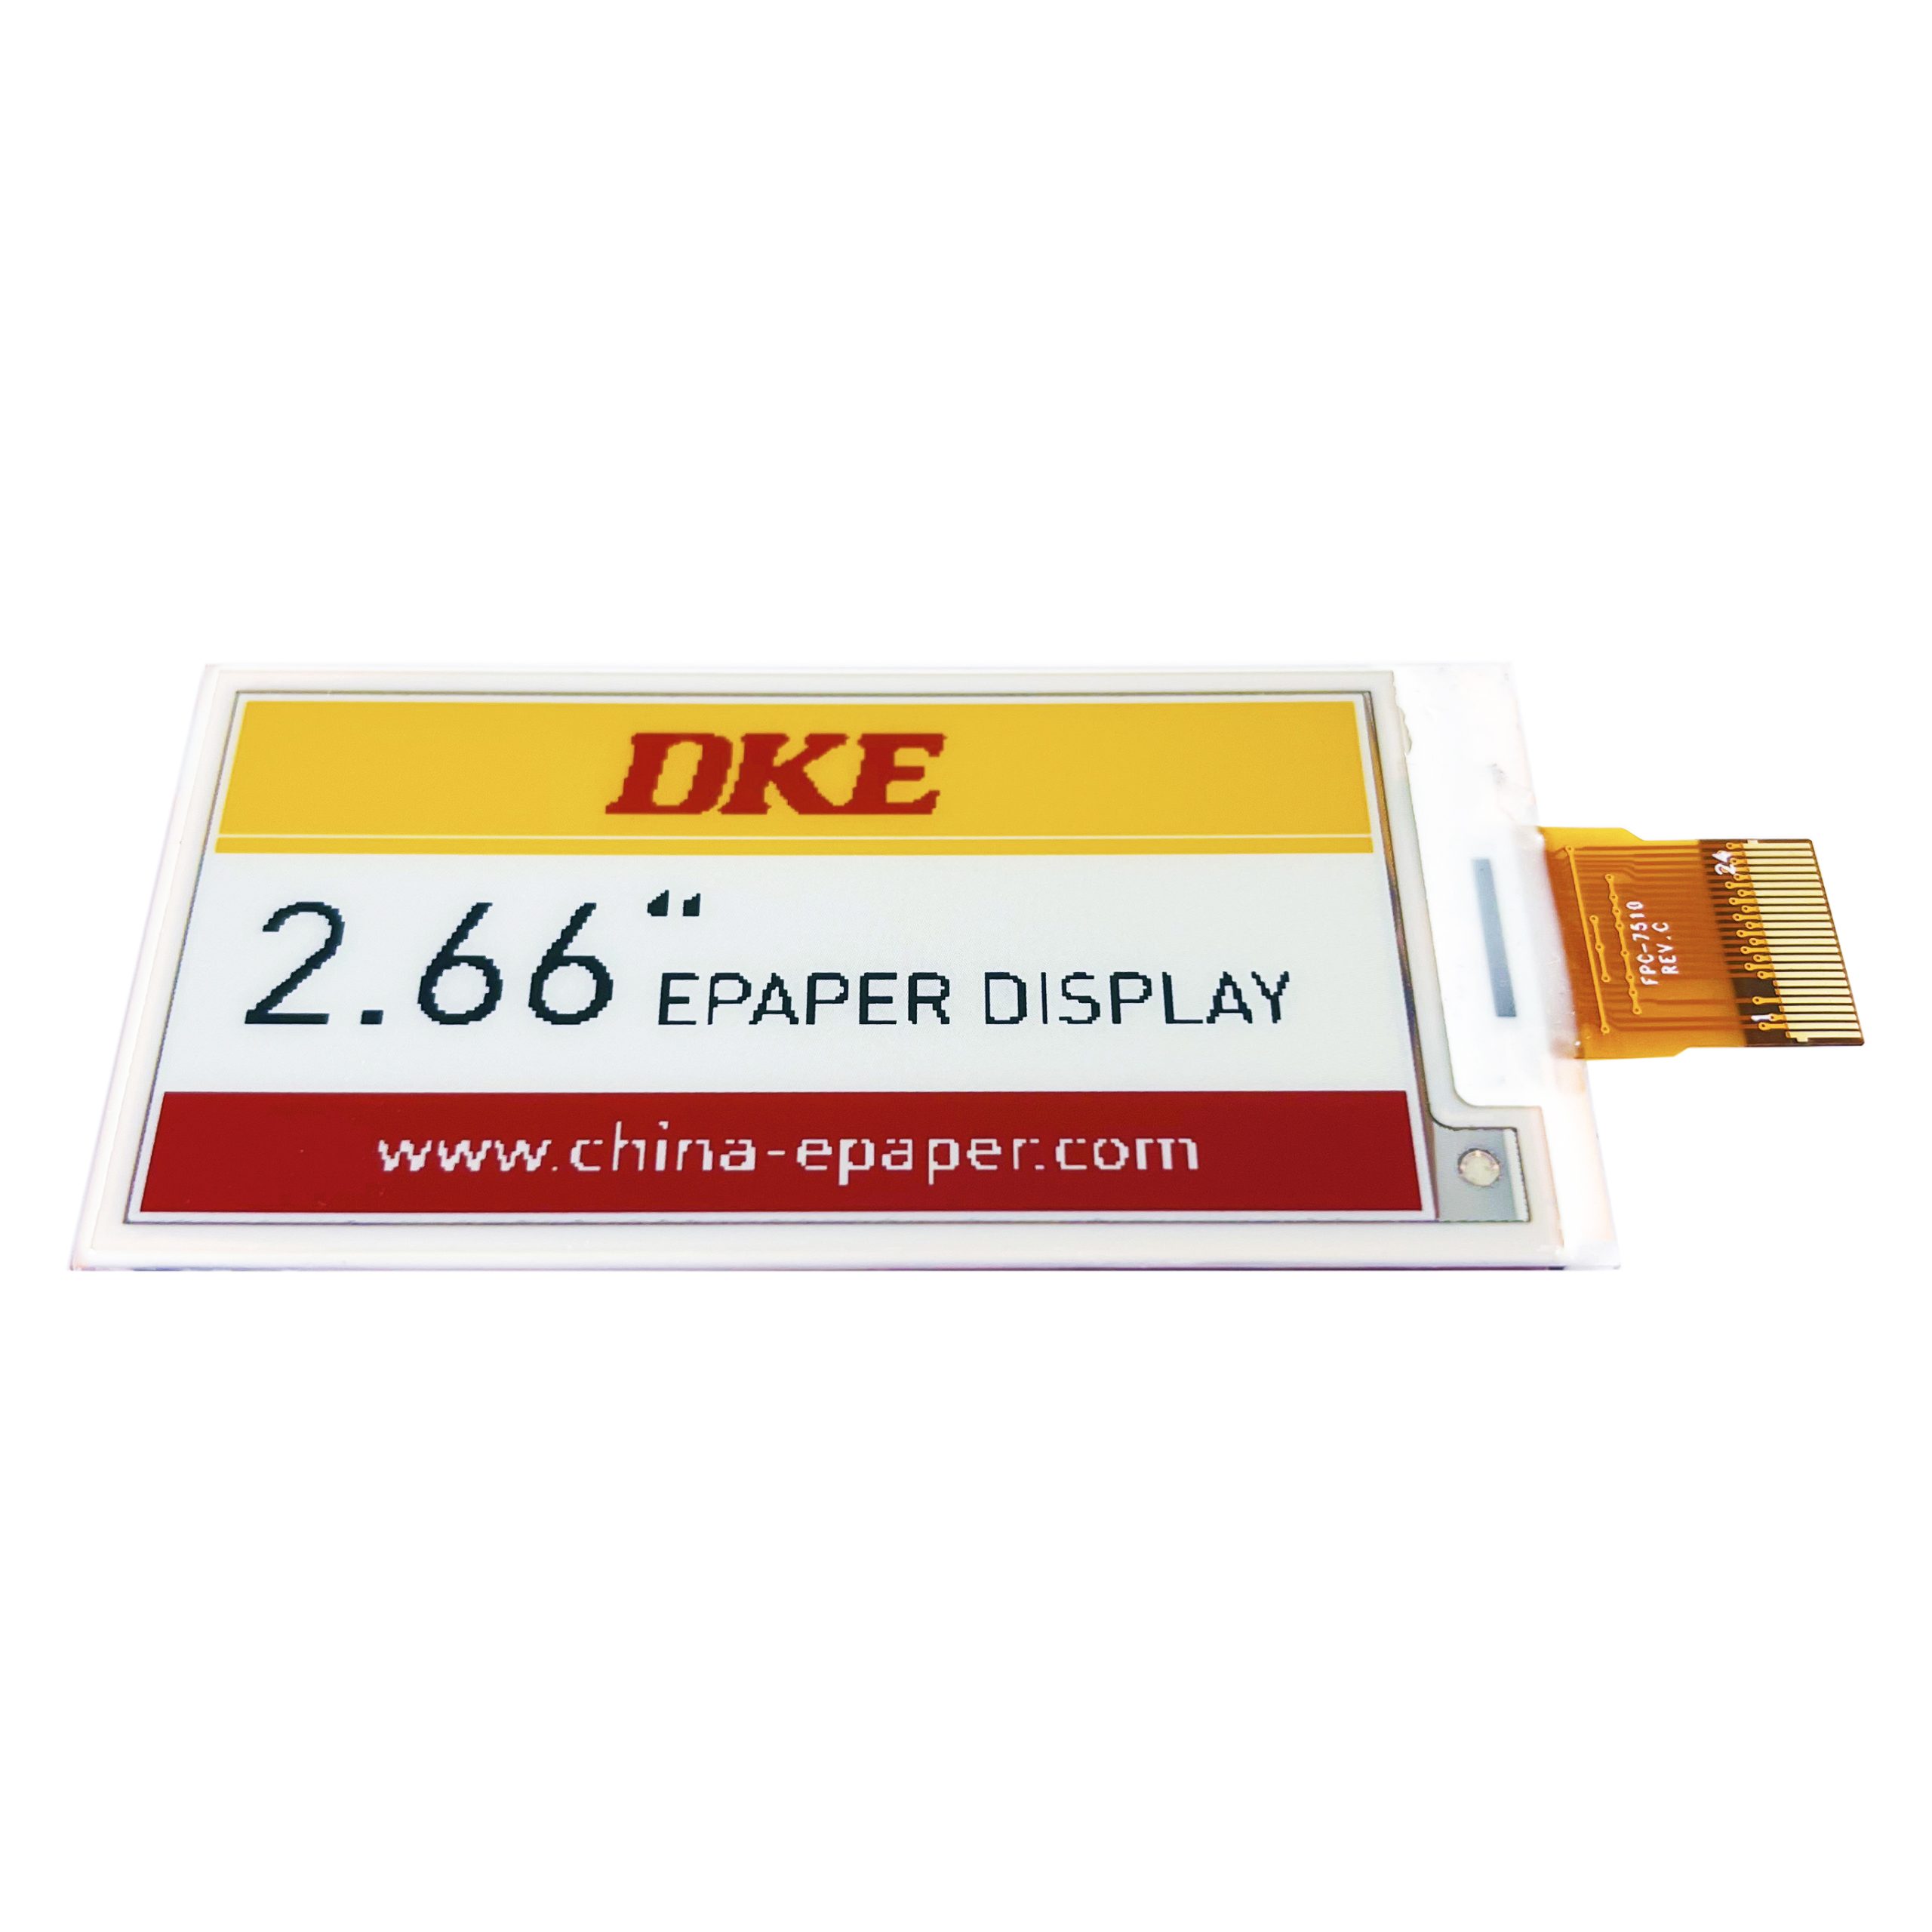 DKE 2.66 inch Epaper Display-E5